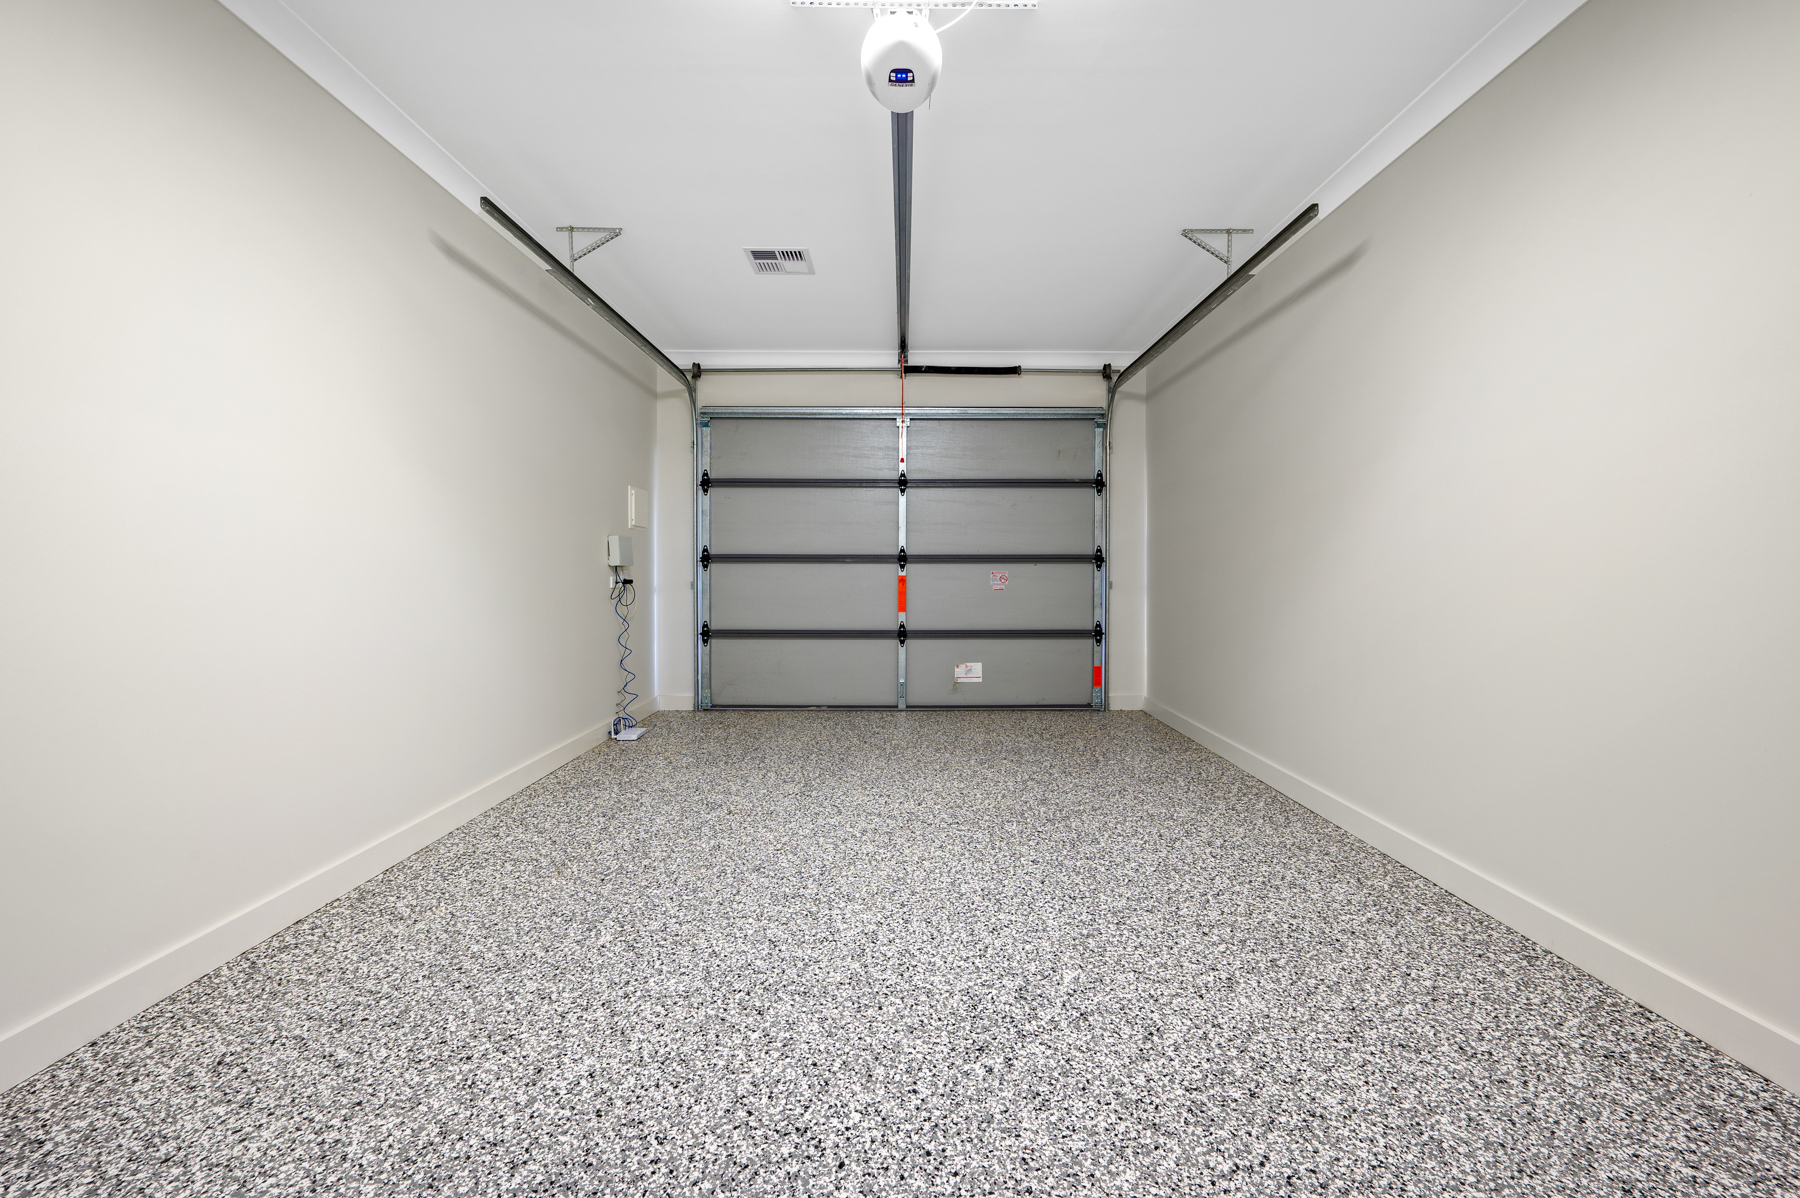 Archerfield garage with epoxy flooring